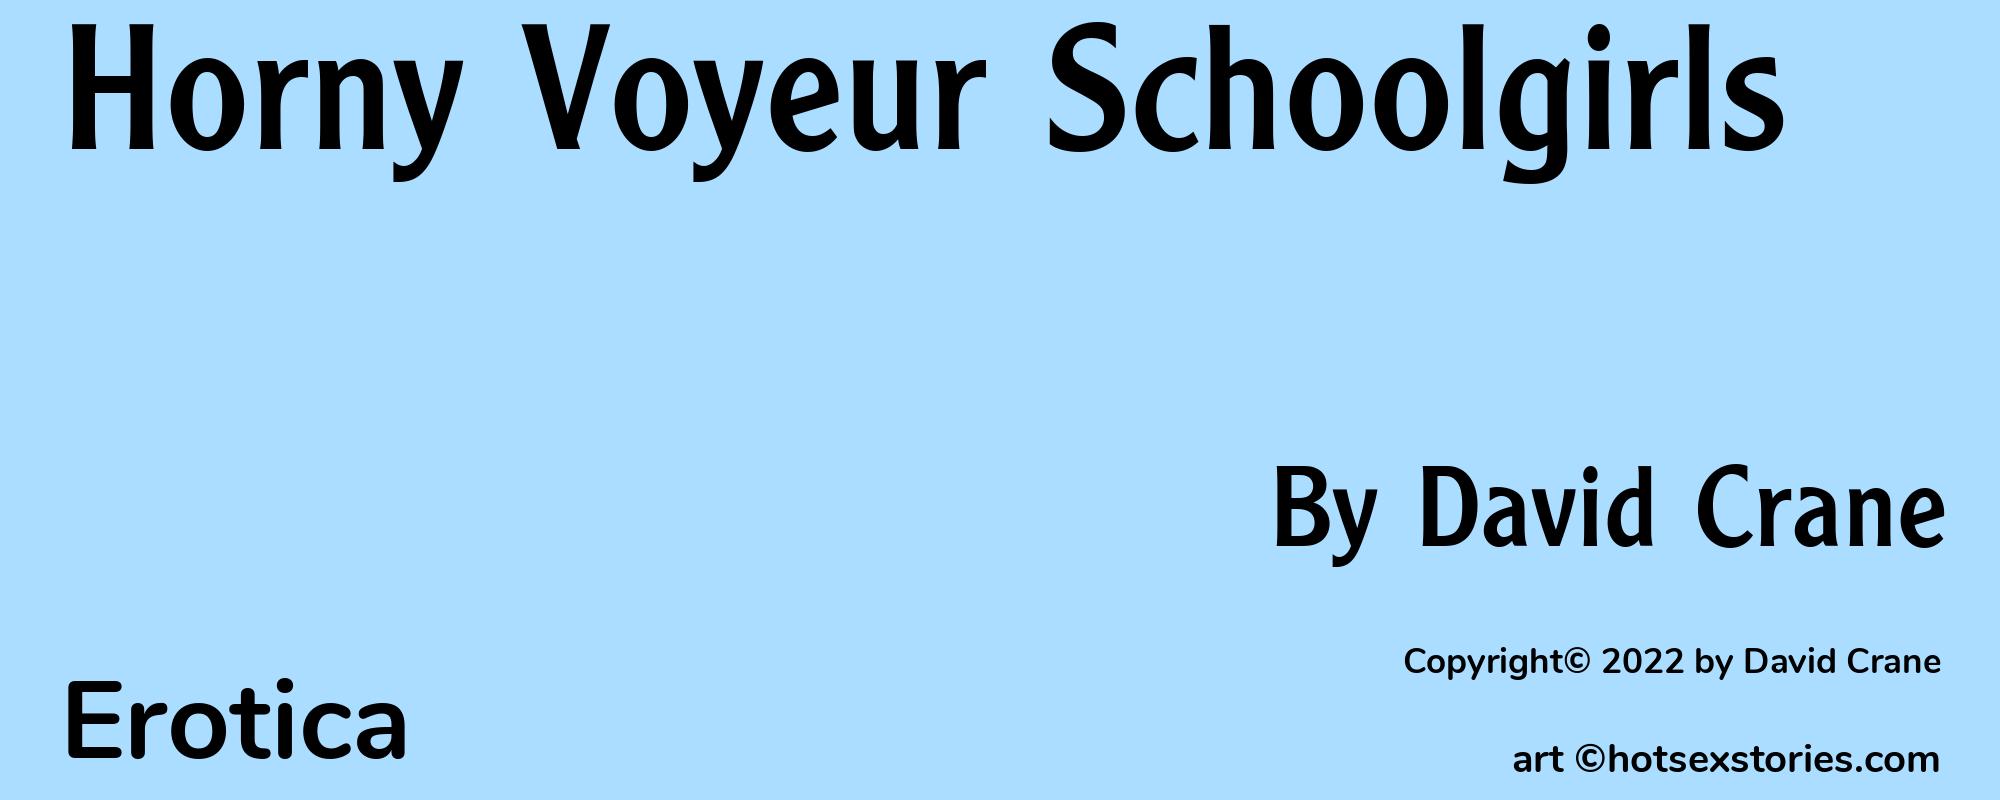 Horny Voyeur Schoolgirls - Cover